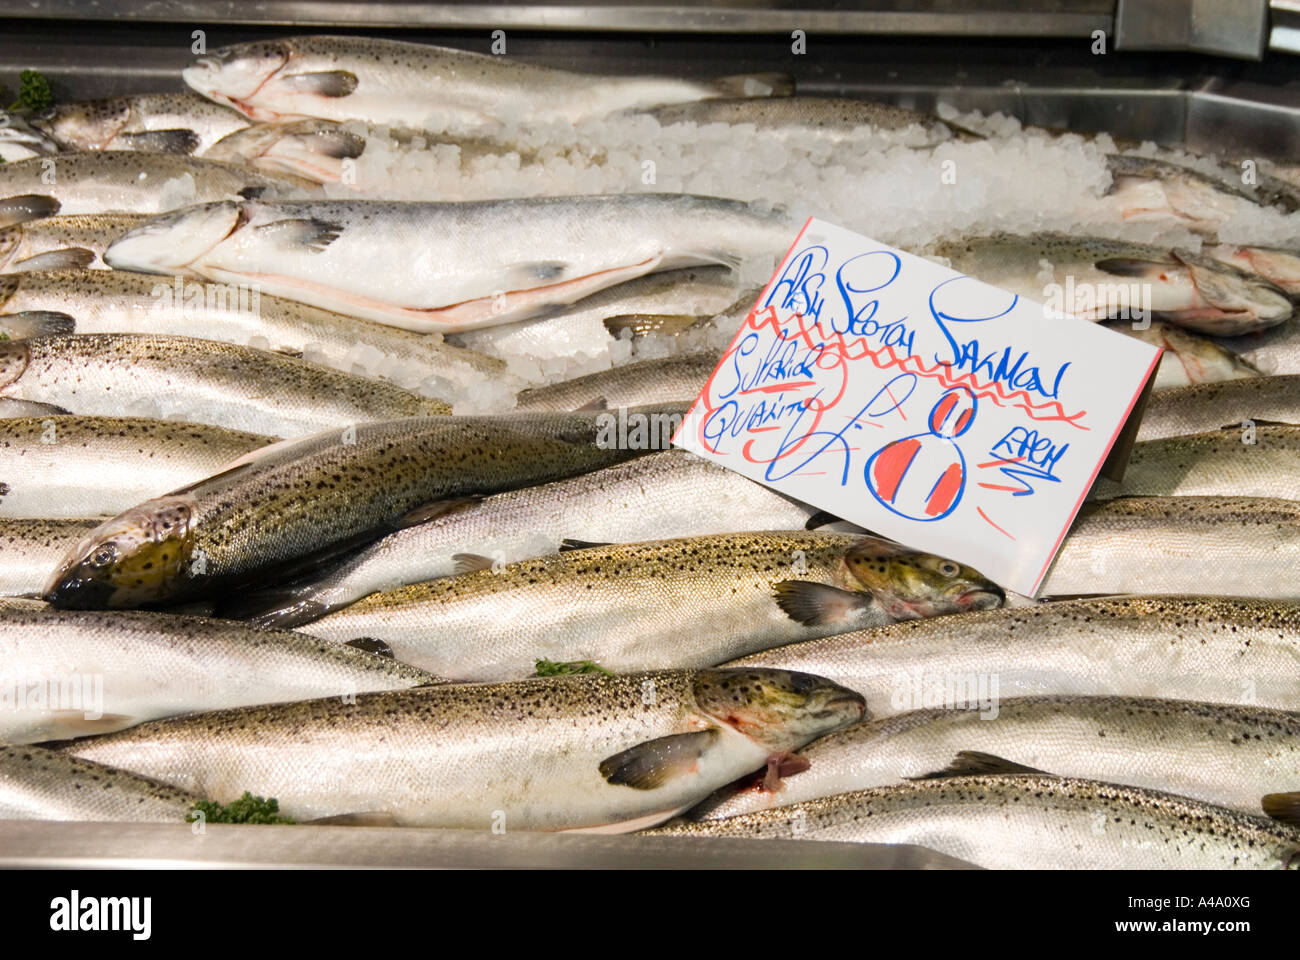 Poisson saumon frais en marché de Bury Manchester UK Banque D'Images